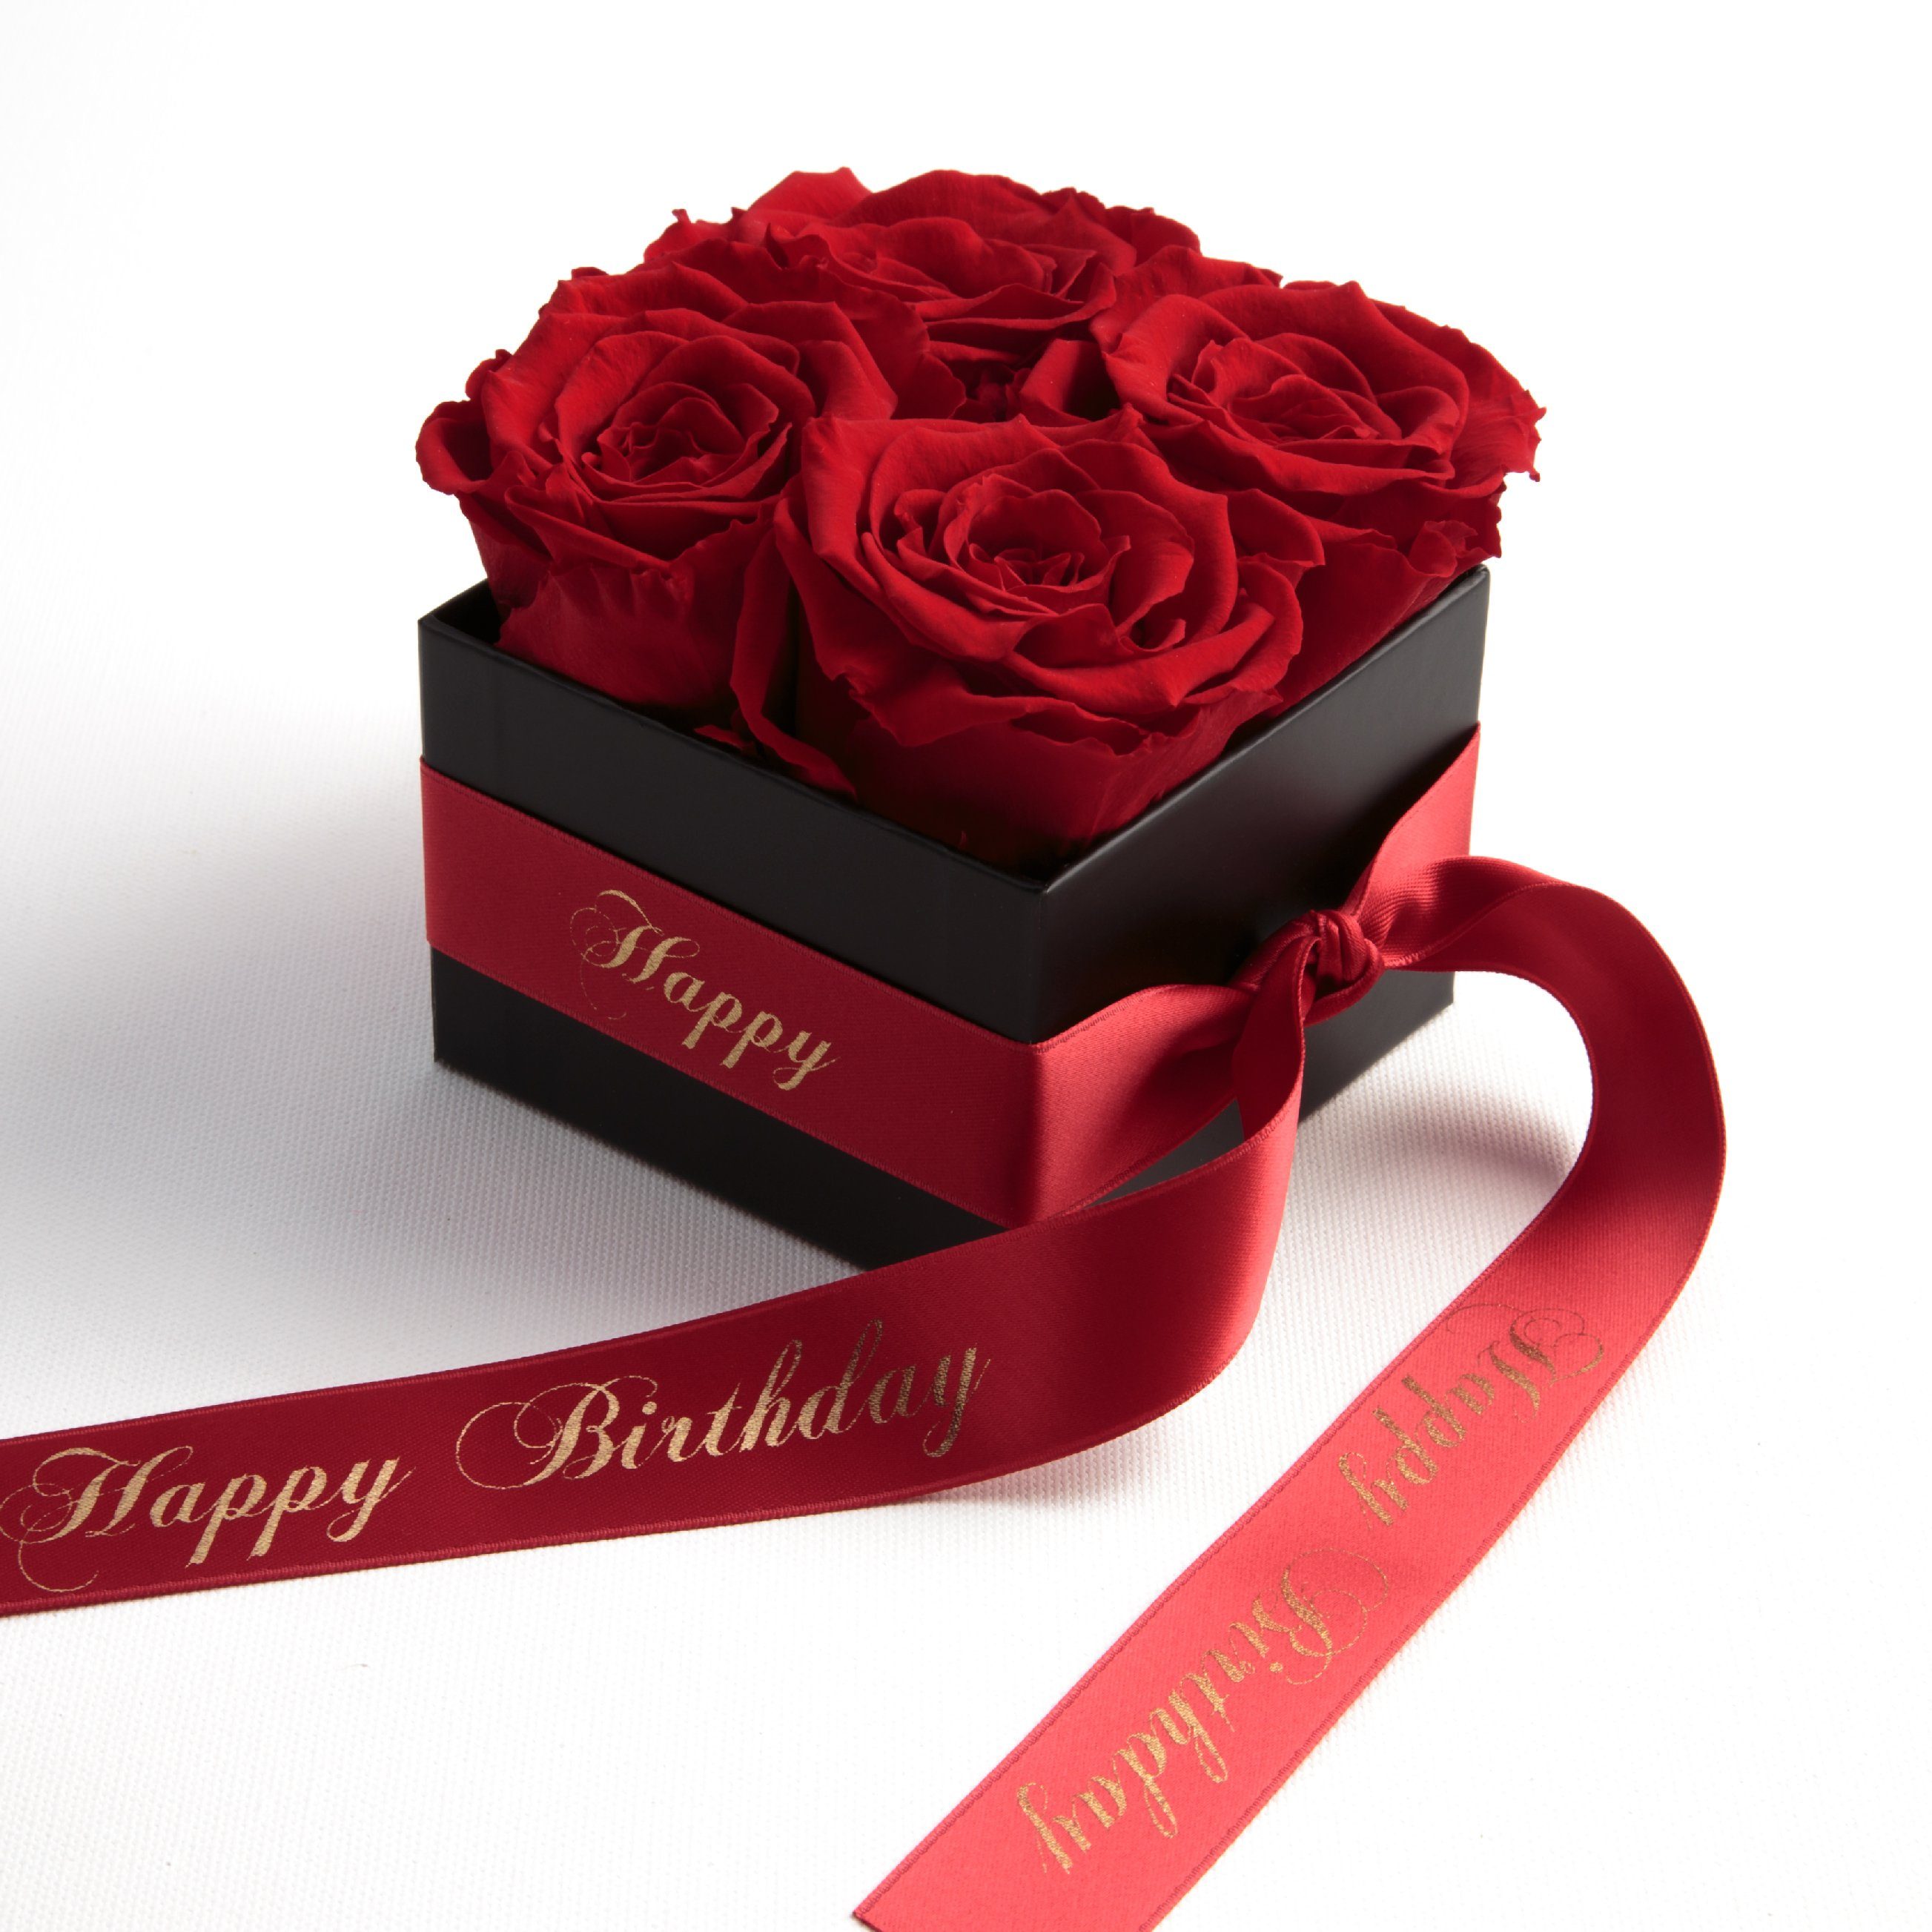 Kunstblume Infinity Rosenbox Happy Birthday Geschenk Geburtstag für Frauen Rose, ROSEMARIE SCHULZ Heidelberg, Höhe 8.5 cm, echte Rosen haltbar 3 Jahre rot